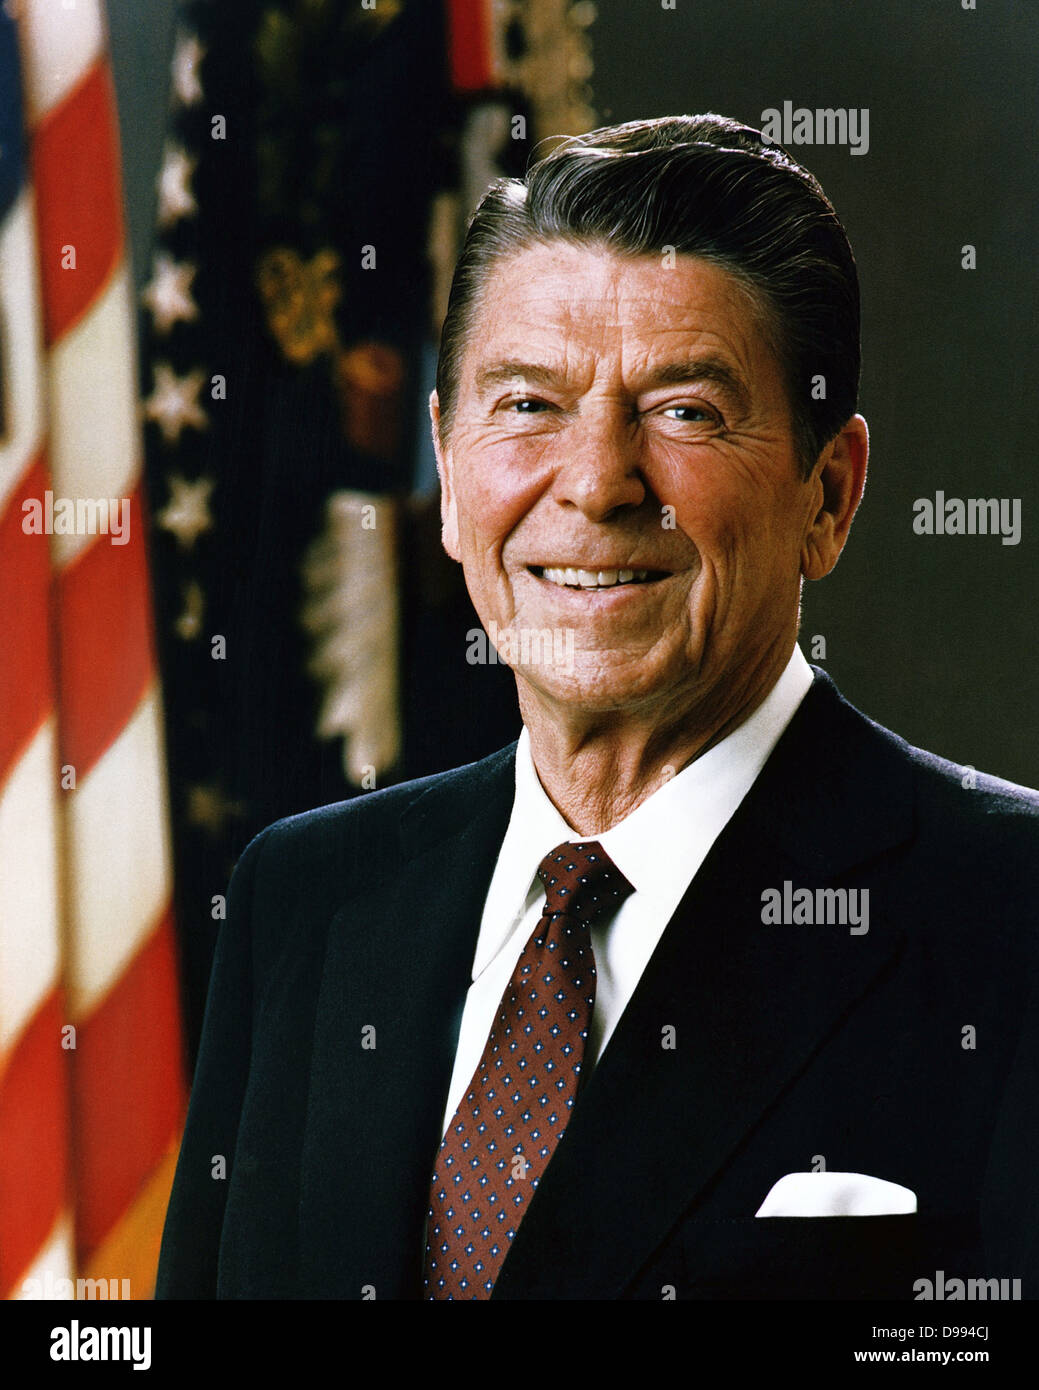 Ritratto ufficiale del Presidente Ronald Reagan, 1981. Ronald Wilson Reagan (Febbraio 6, 1911 - Giugno 5, 2004) era il quarantesimo Presidente degli Stati Uniti (1981-1989) e la 33a governatore di California (1967-1975). Foto Stock